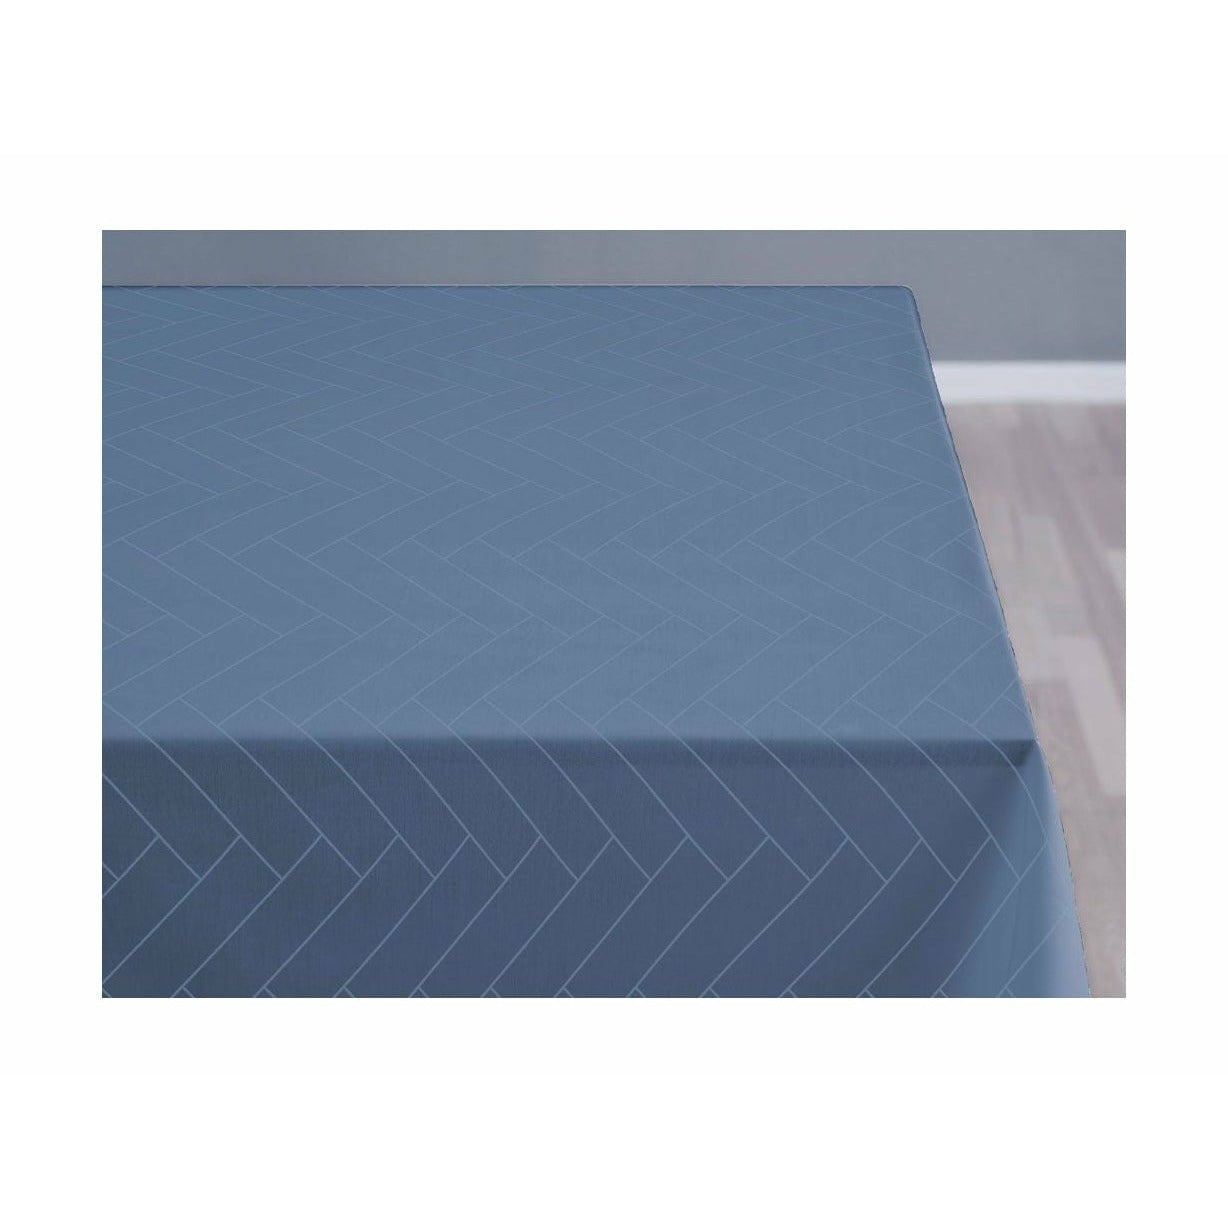 Comprimés de carreaux de carreaux södahl 370x140 cm, bleu ciel